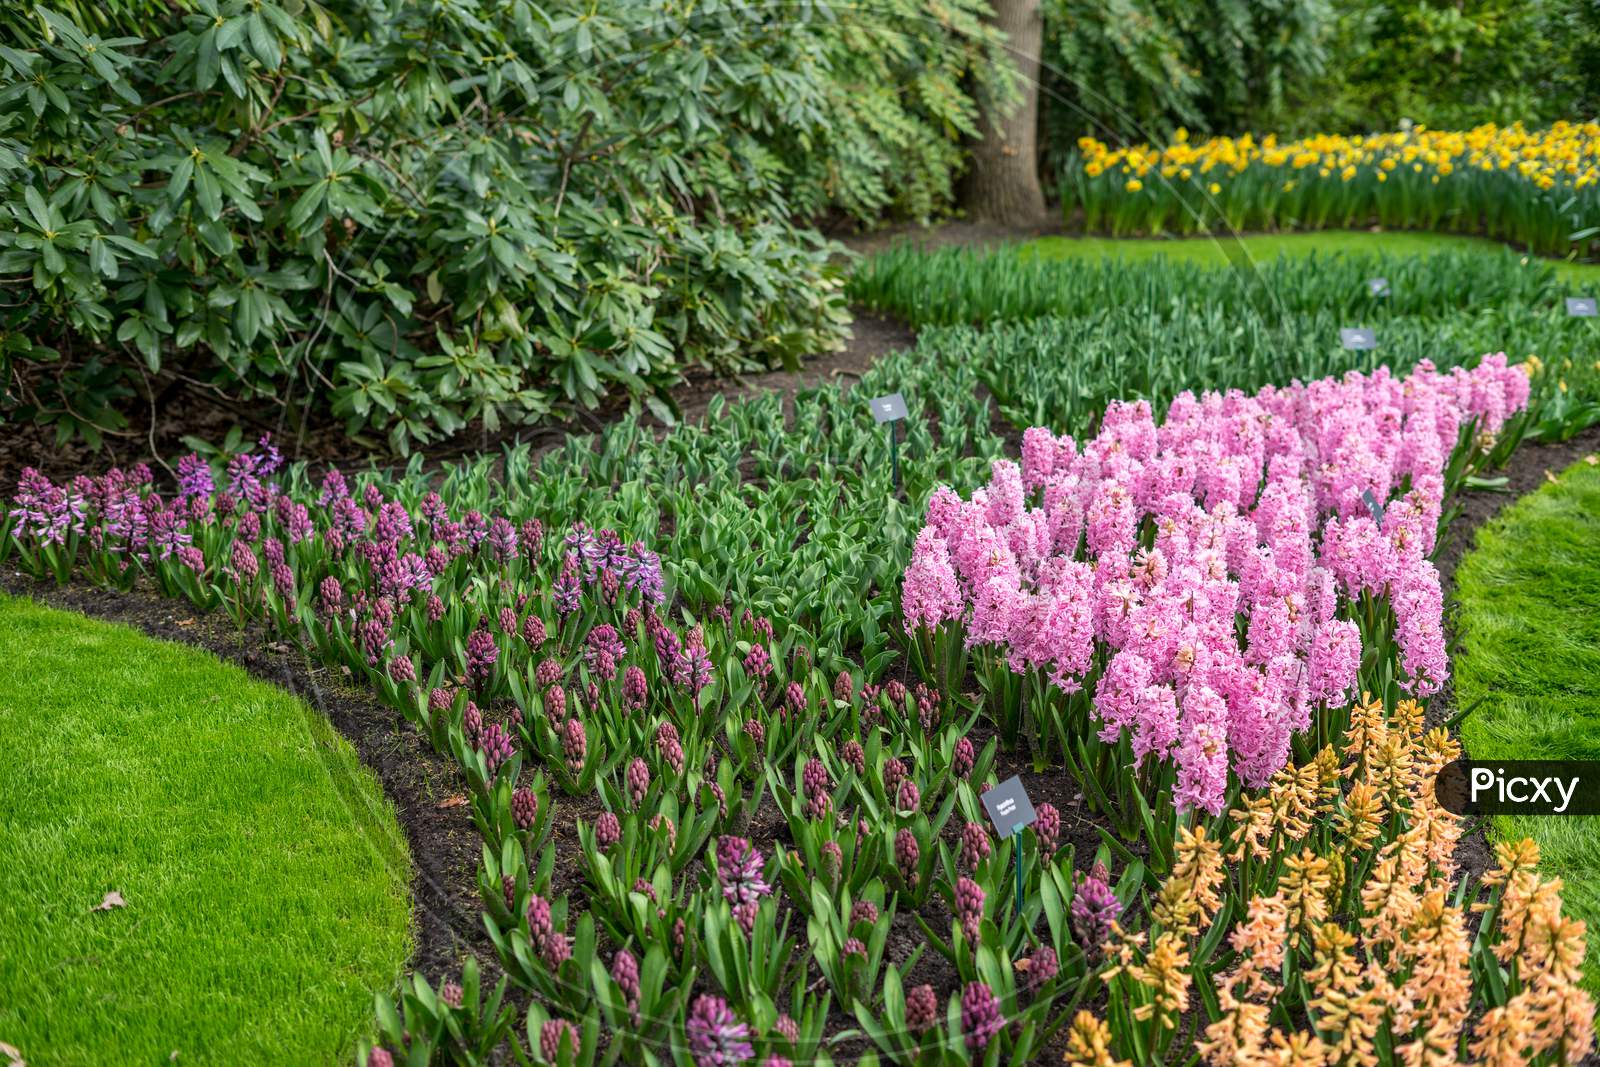 Flower Garden, Netherlands , A Close Up Of A Flower Garden